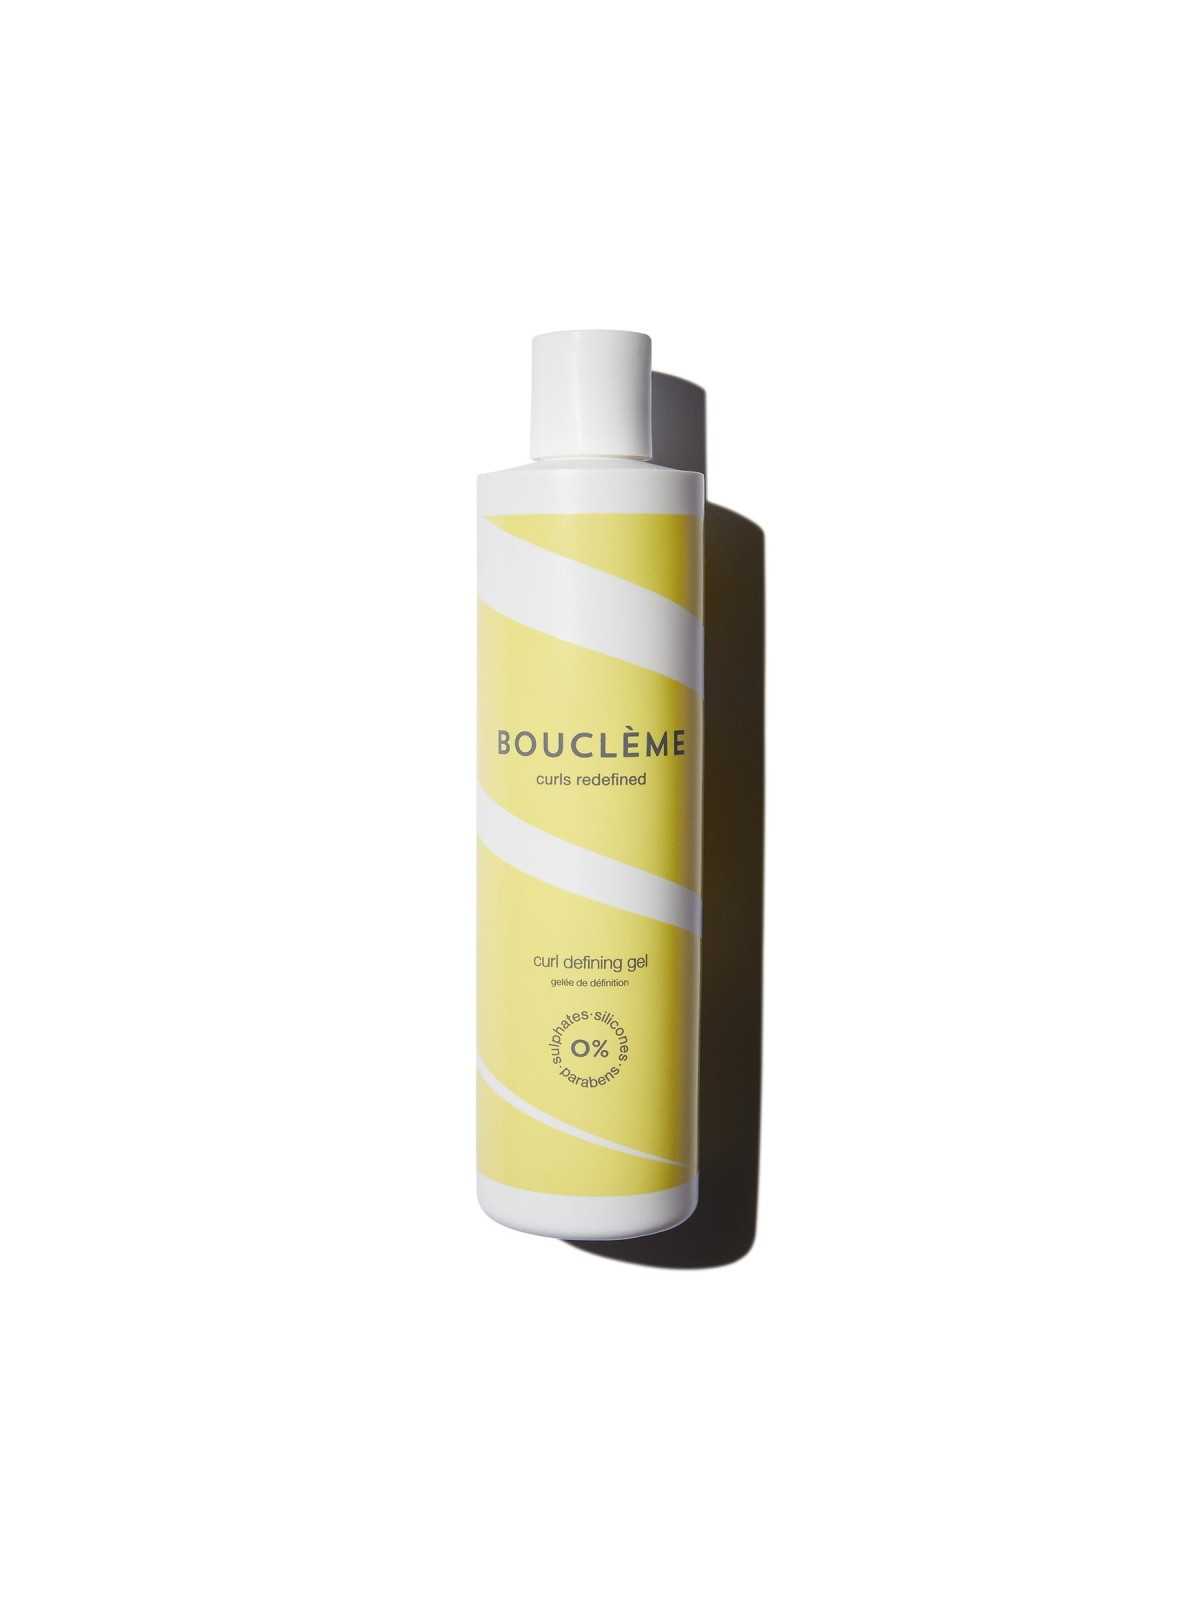 Comprar Bouclème Curl Defining Gel 300ml en Inicio por sólo 19,95 € o un precio específico de 17,95 € en Thalie Care